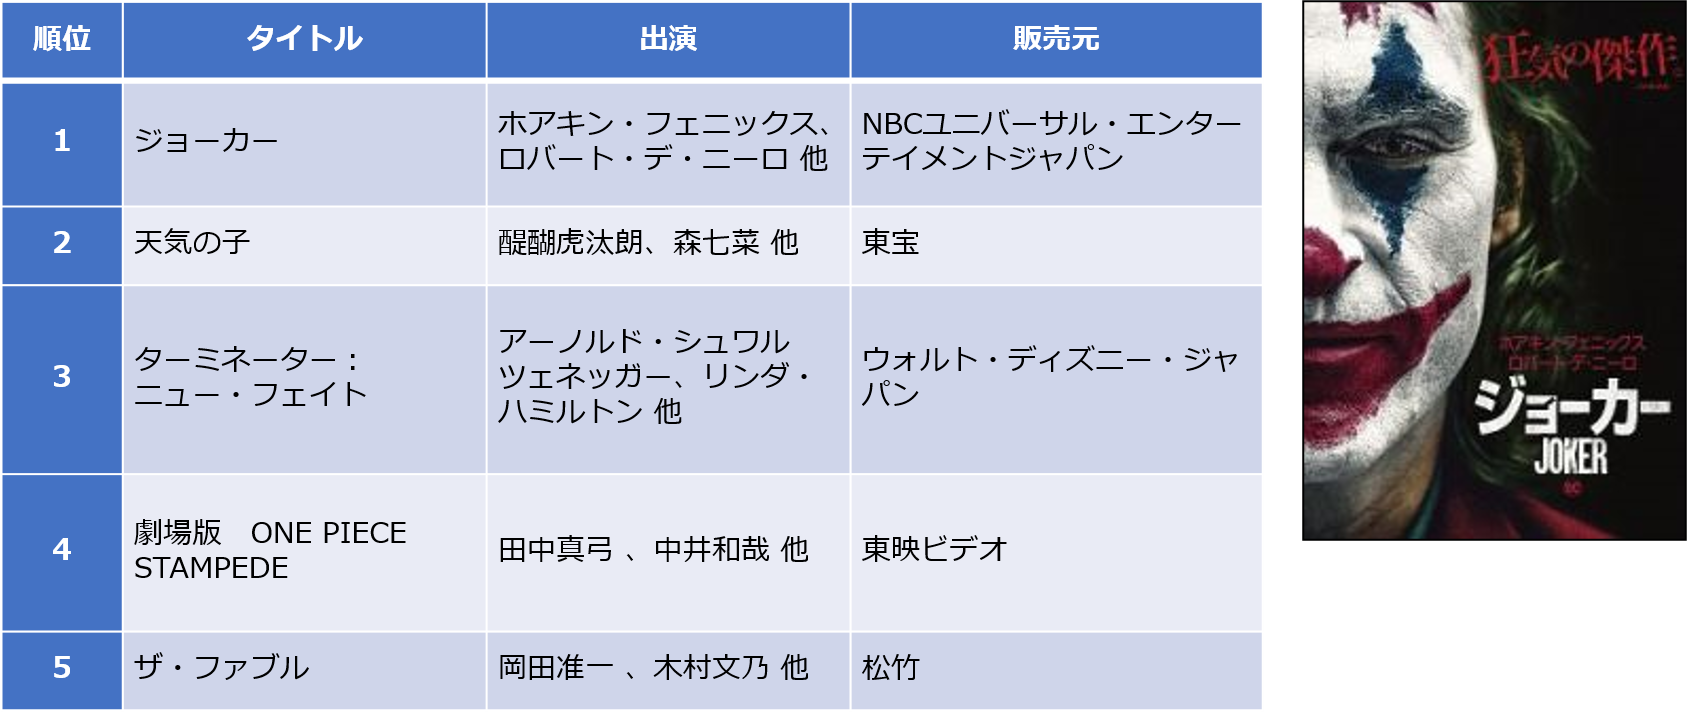 Tsutaya 年 年間ランキング レンタル 販売 発表 ニュース Ccc カルチュア コンビニエンス クラブ株式会社